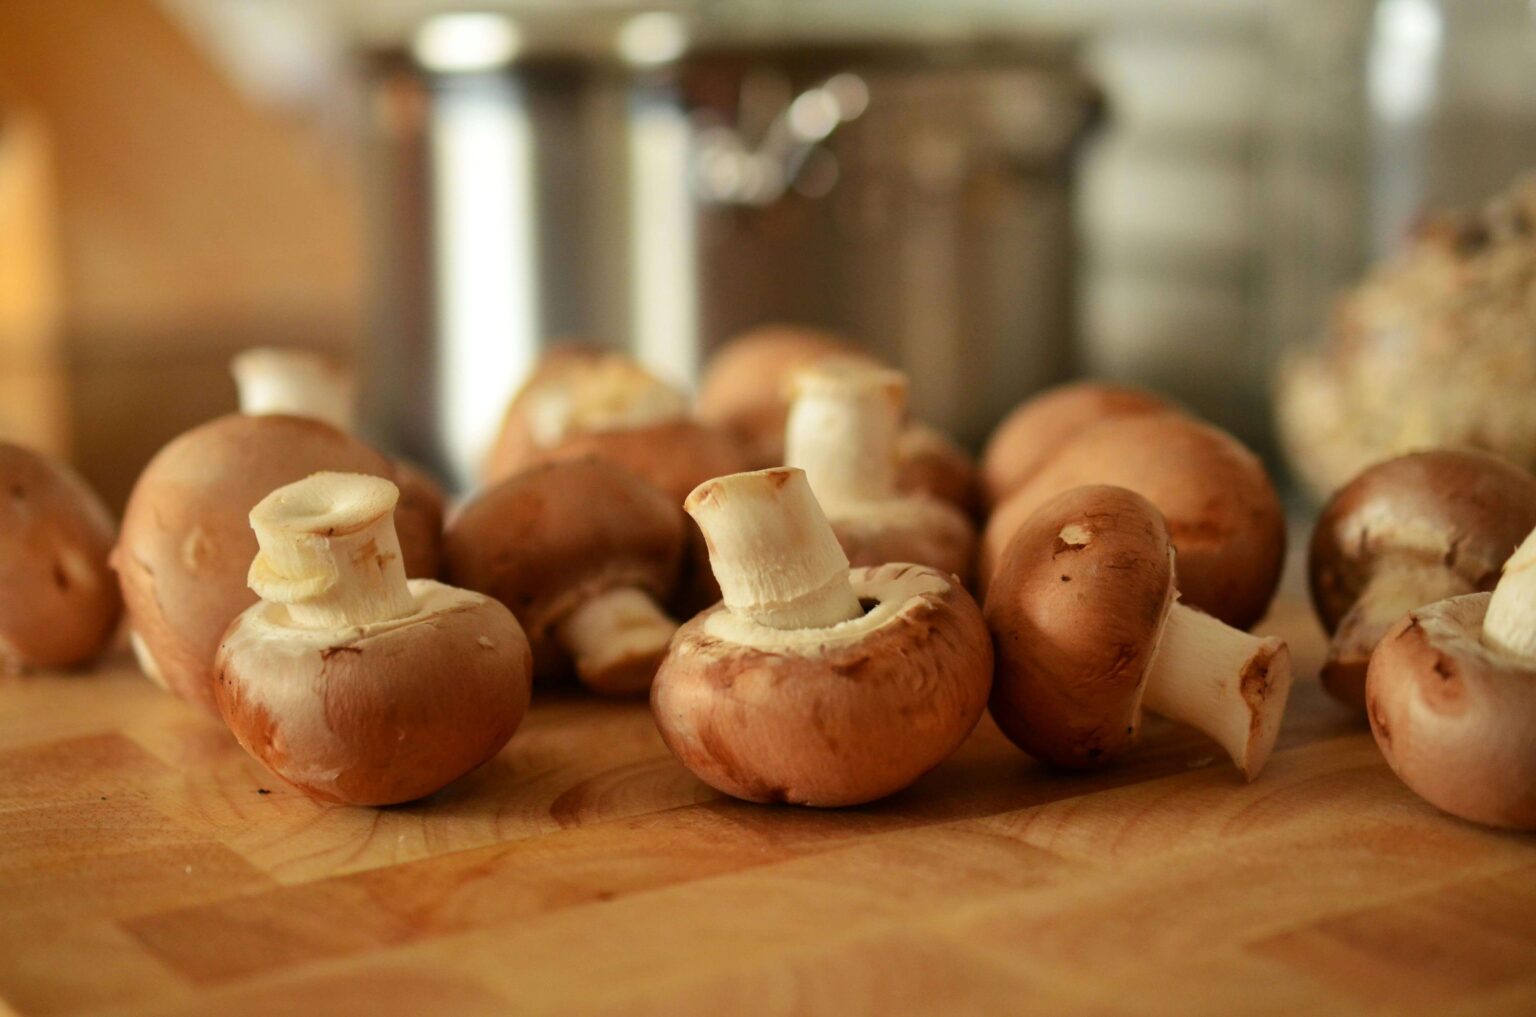 Mushroom, ingredients